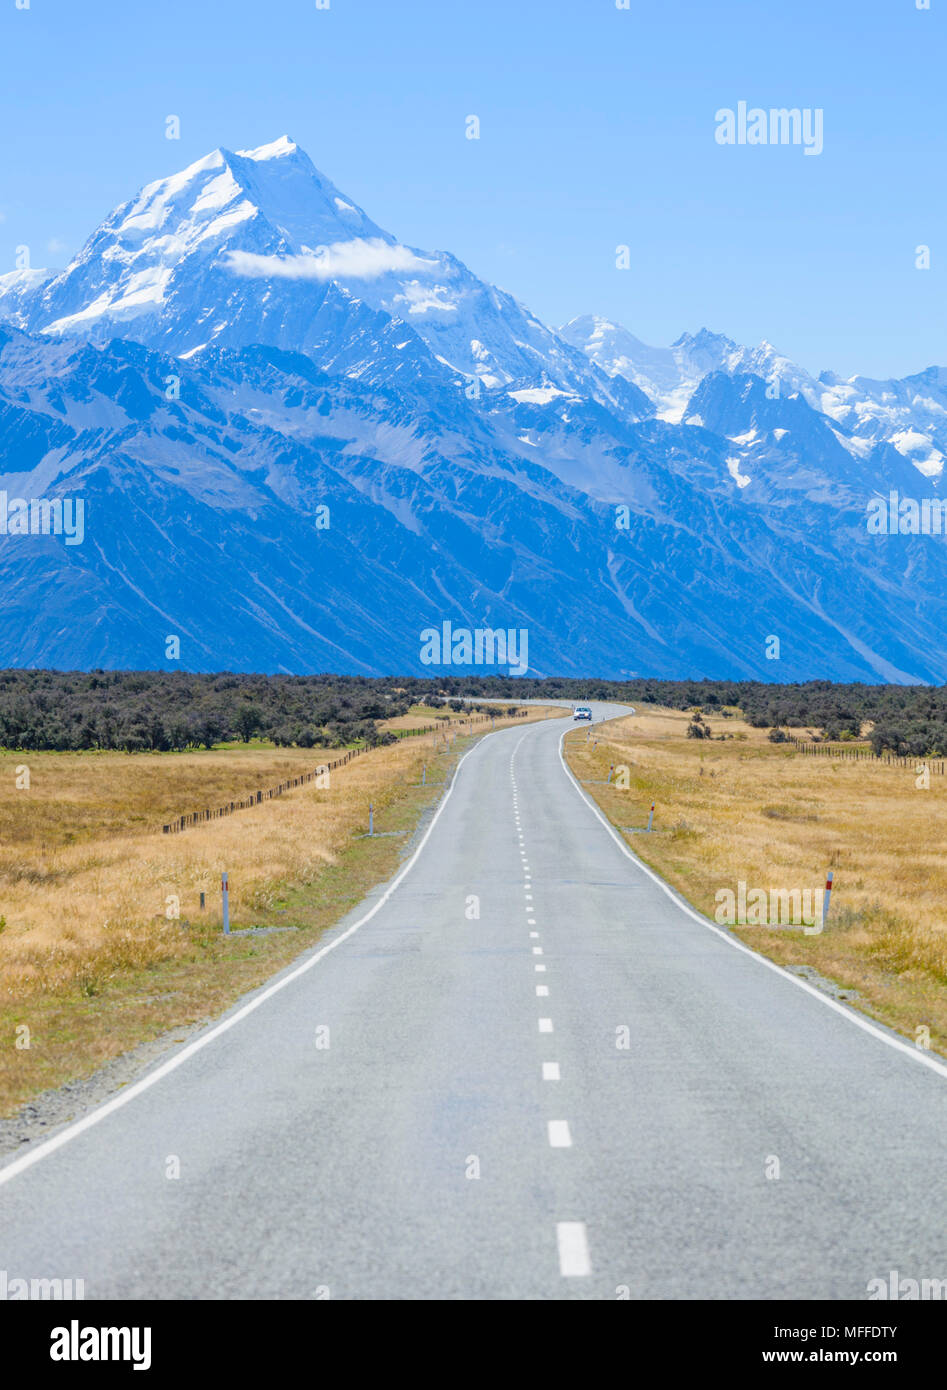 Nuova Zelanda Isola del Sud della Nuova Zelanda una dritta strada vuota con assenza di traffico nel parco nazionale di Mount Cook Nuova Zelanda Foto Stock